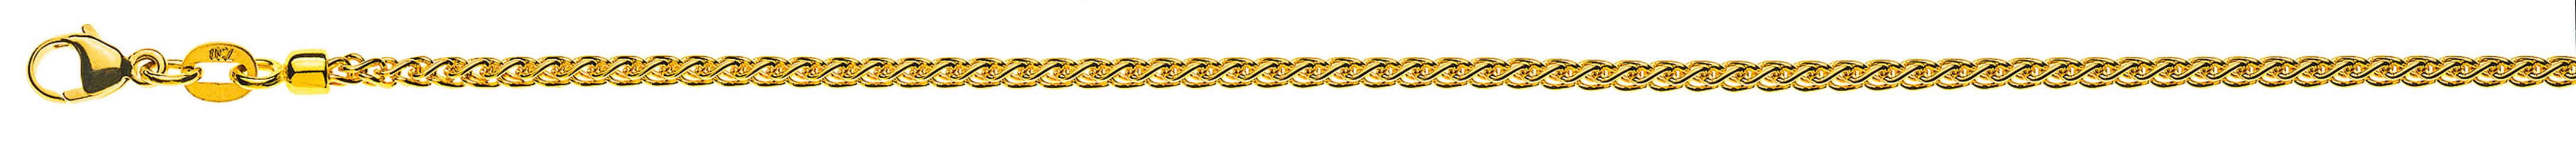 AURONOS Prestige Halskette Gelbgold 18K Zopfkette 55cm 2.15mm